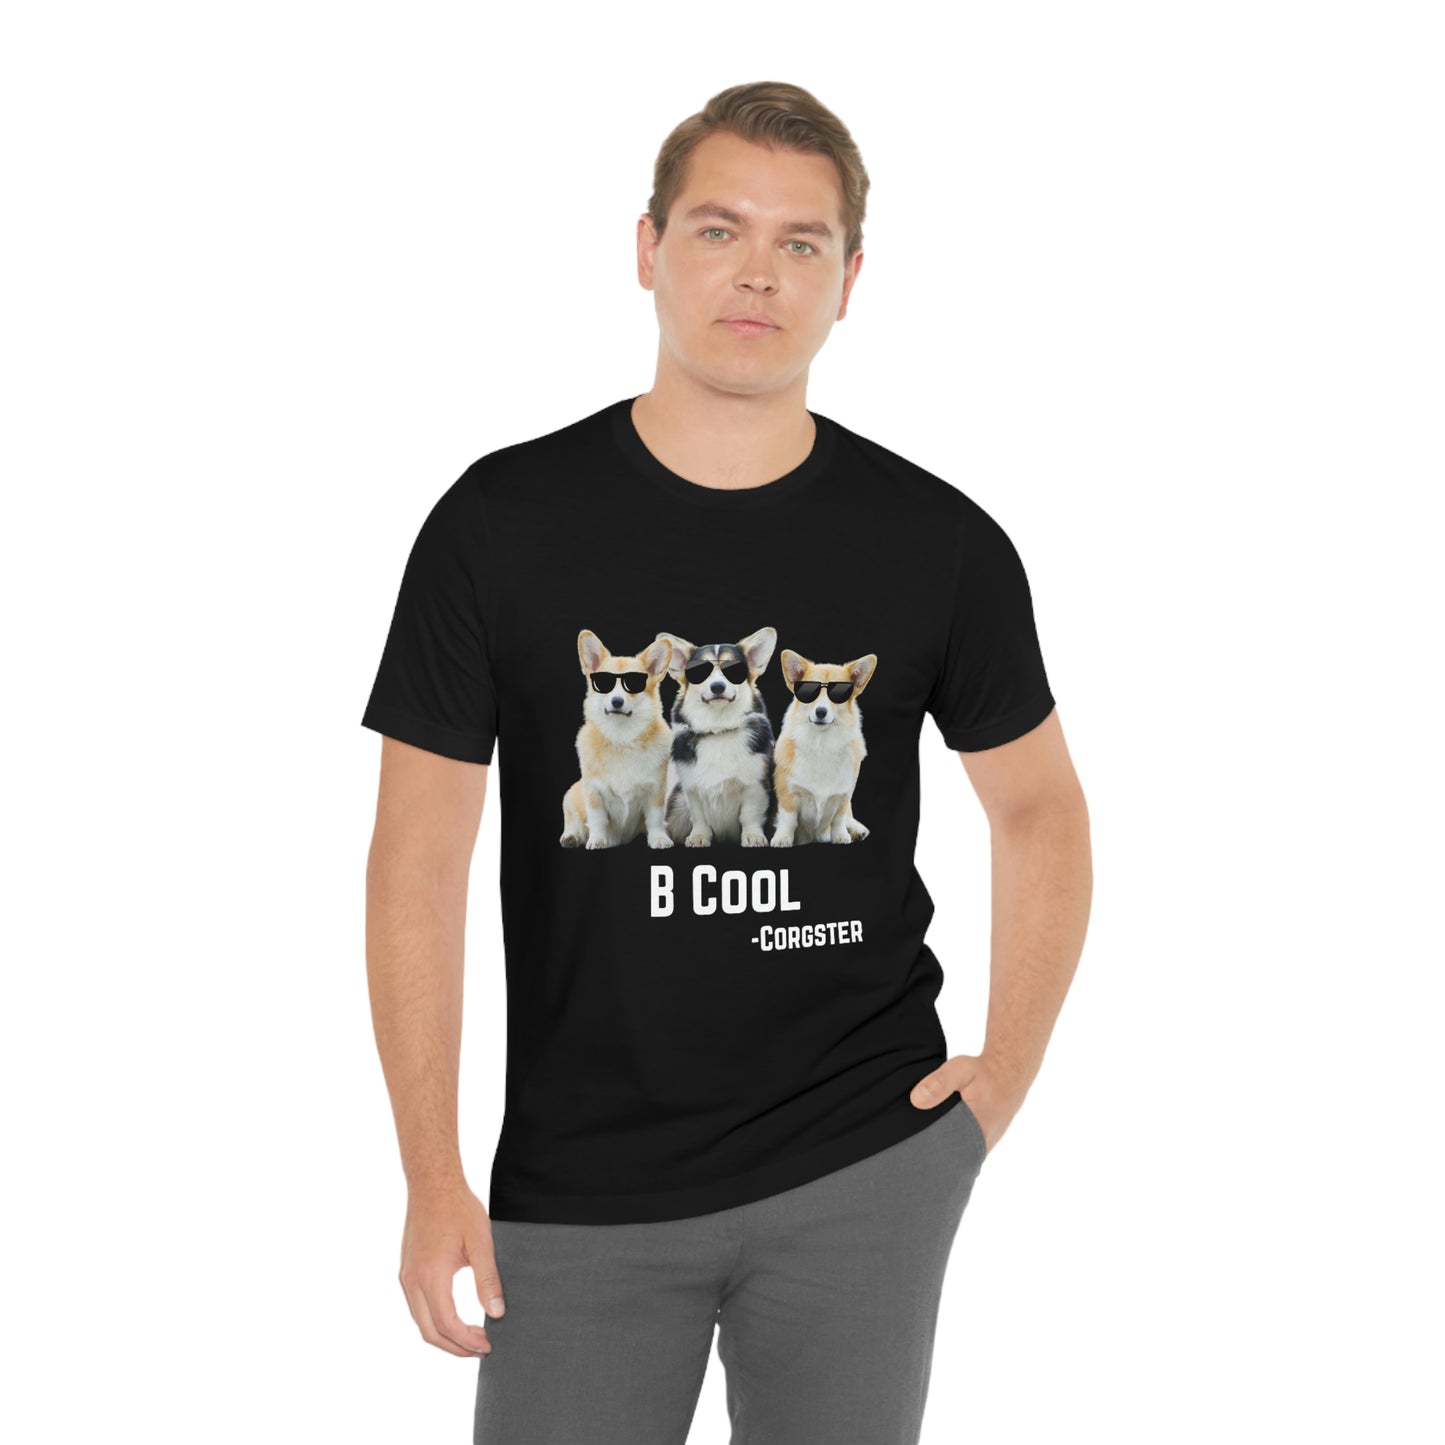 B Cool - The Corgster